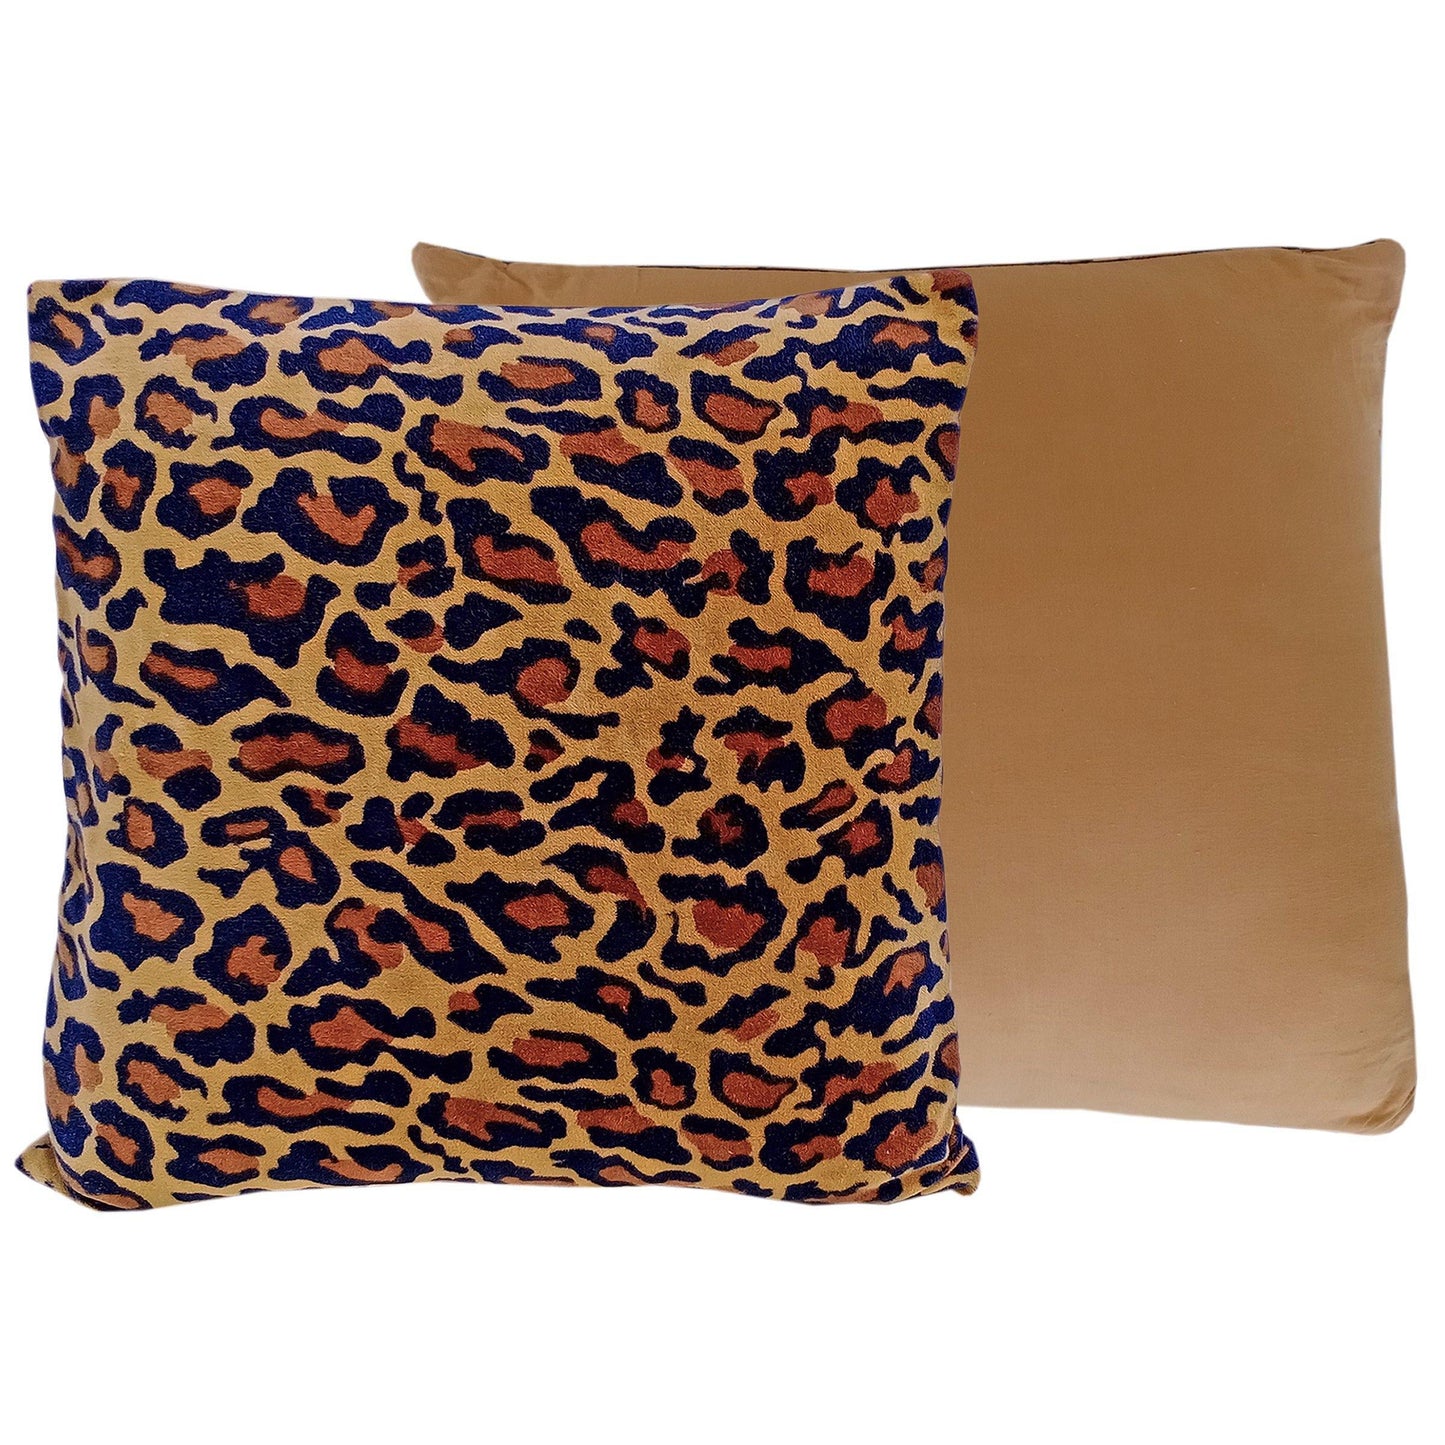 Leopard Print Velvet Cushion Cover - The Teal Thread